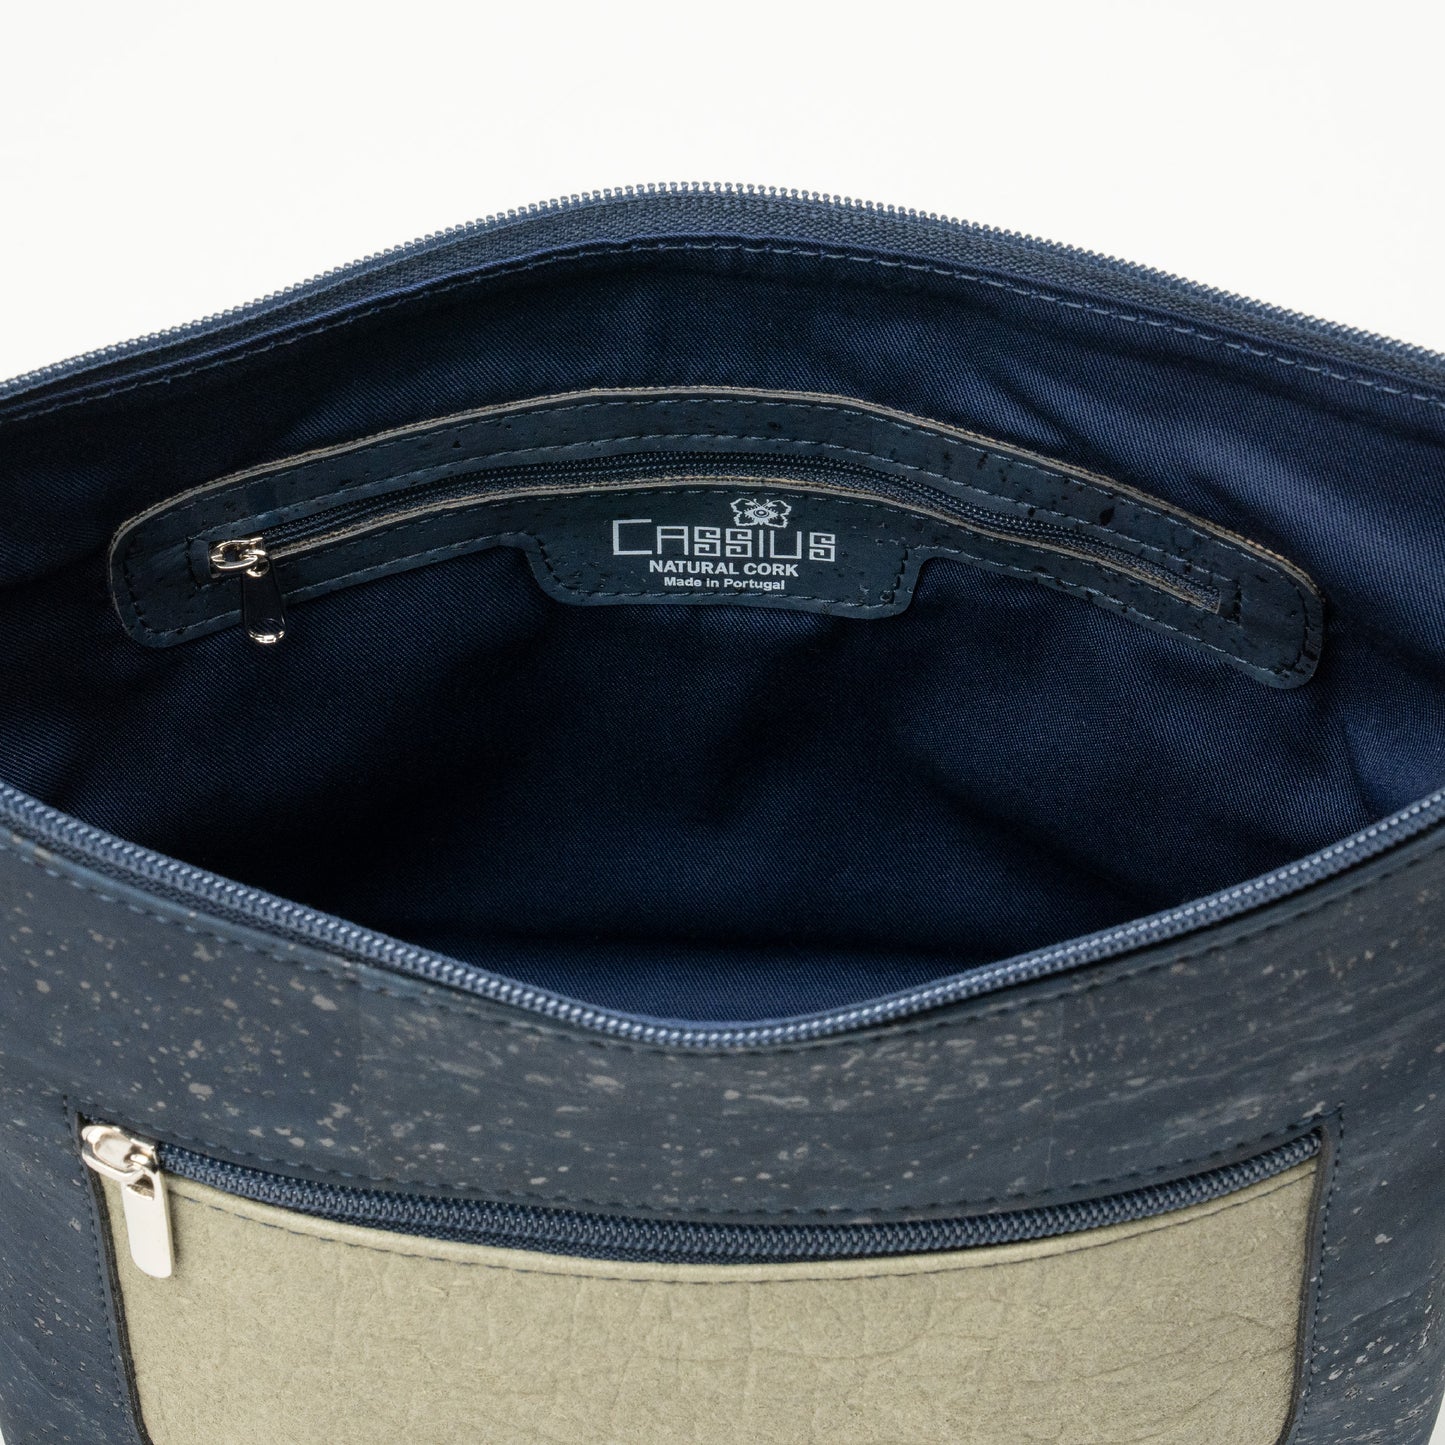 "Zora" Navy Blue/Sage Shoulder Bag